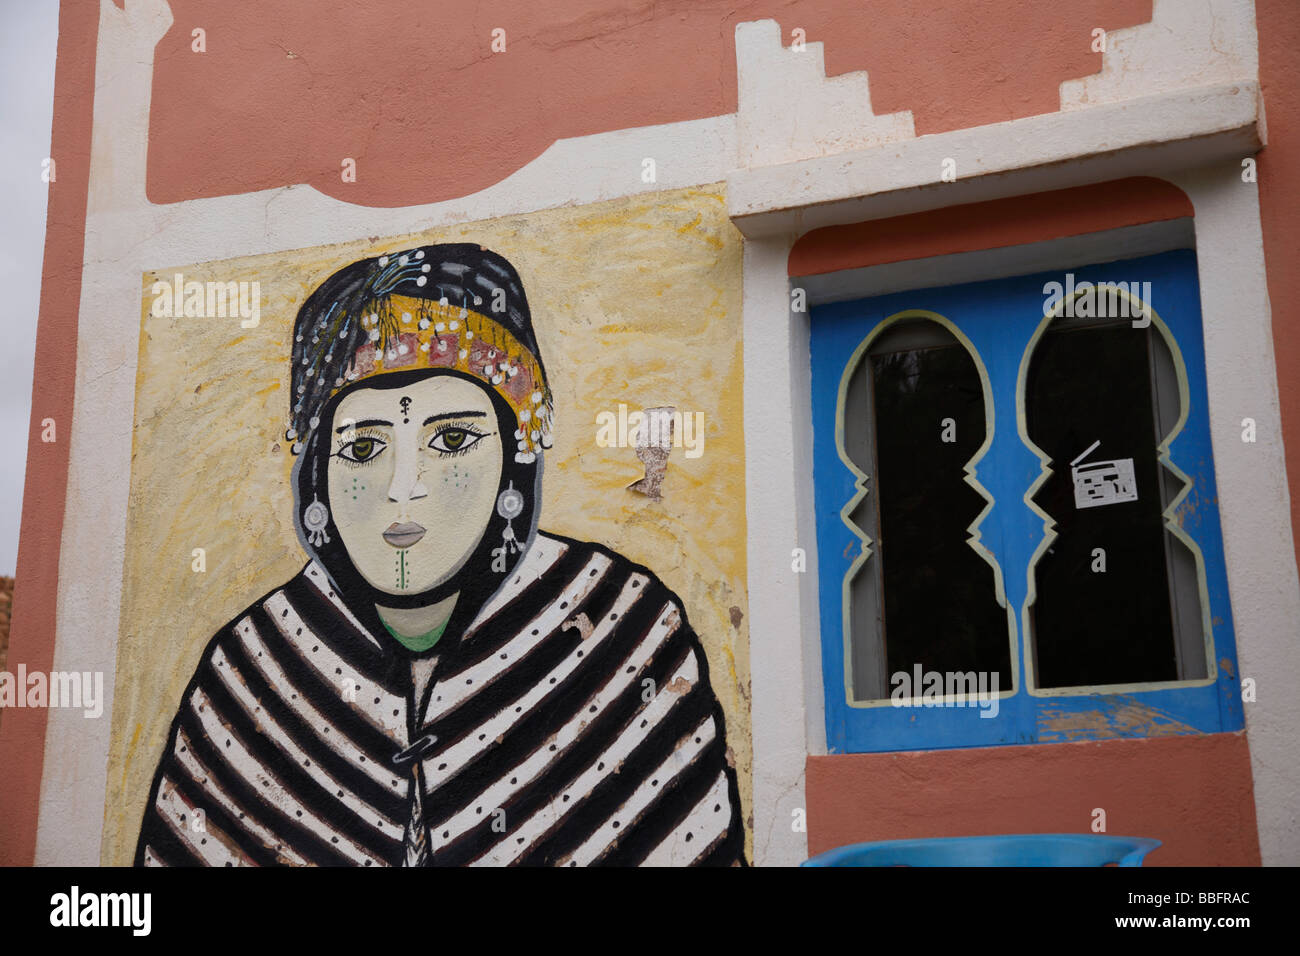 Afrique, Afrique du Nord, Maroc, Atlas, Gorges de Todra, Village Tamtatouchte, Bâtiment, peinture murale de femme berbère Banque D'Images